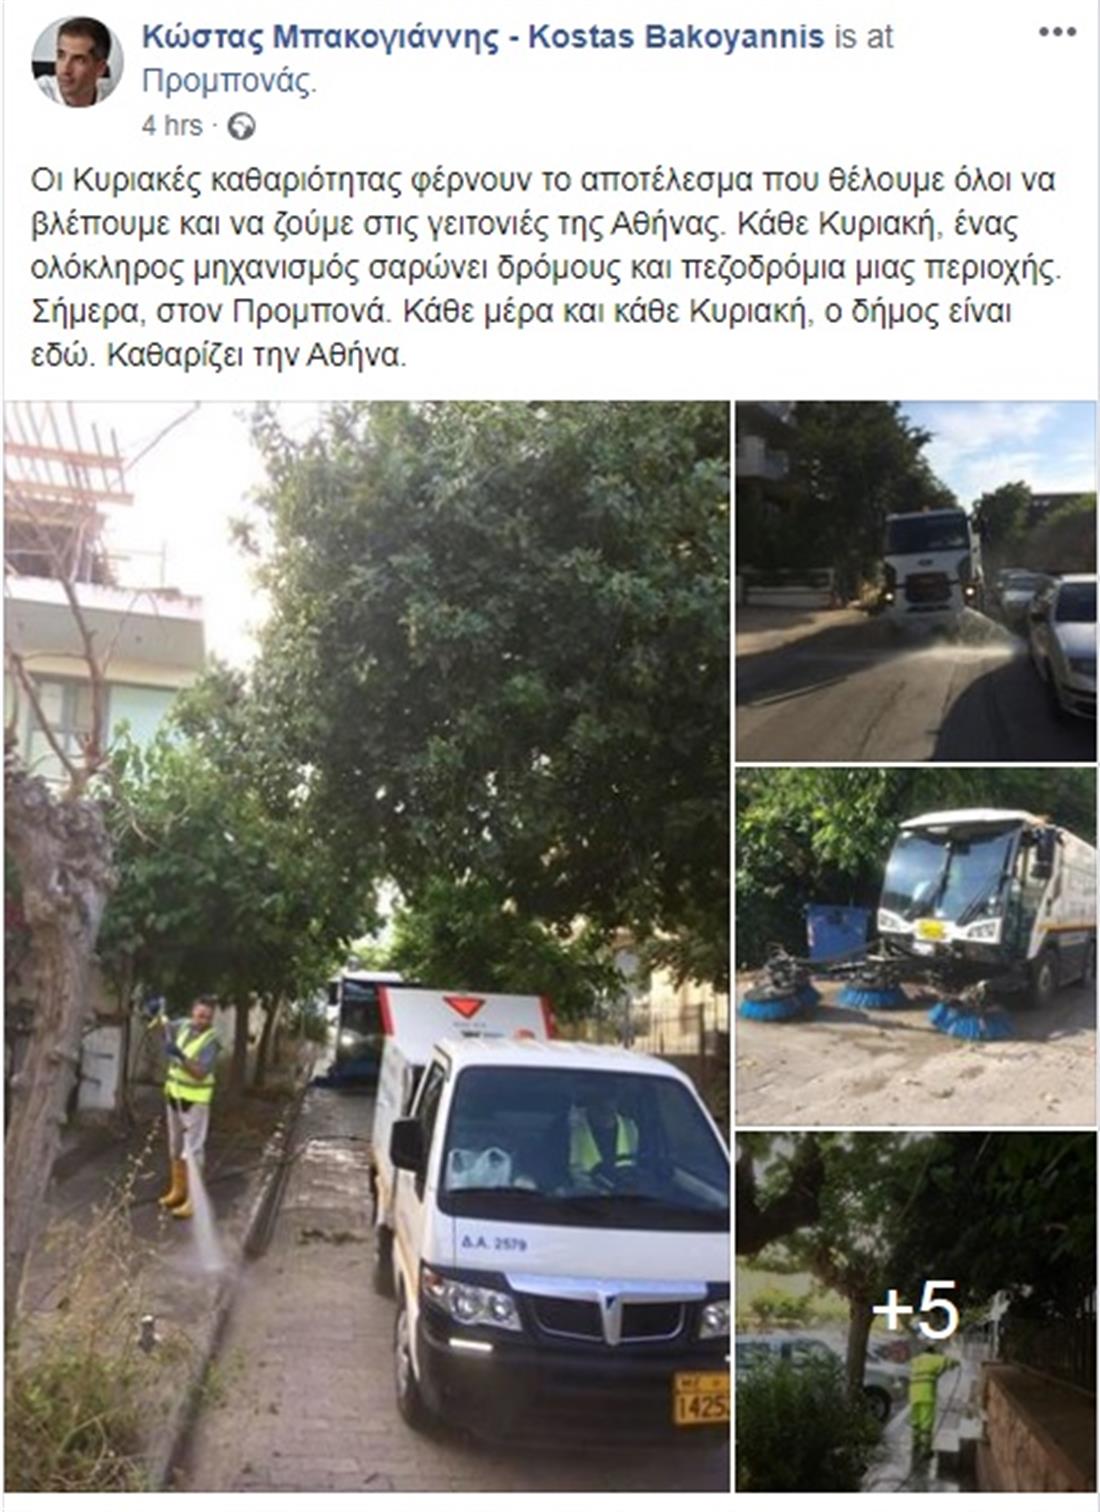 Καθαριότητα - Δήμος Αθηναίων - Προμπονά